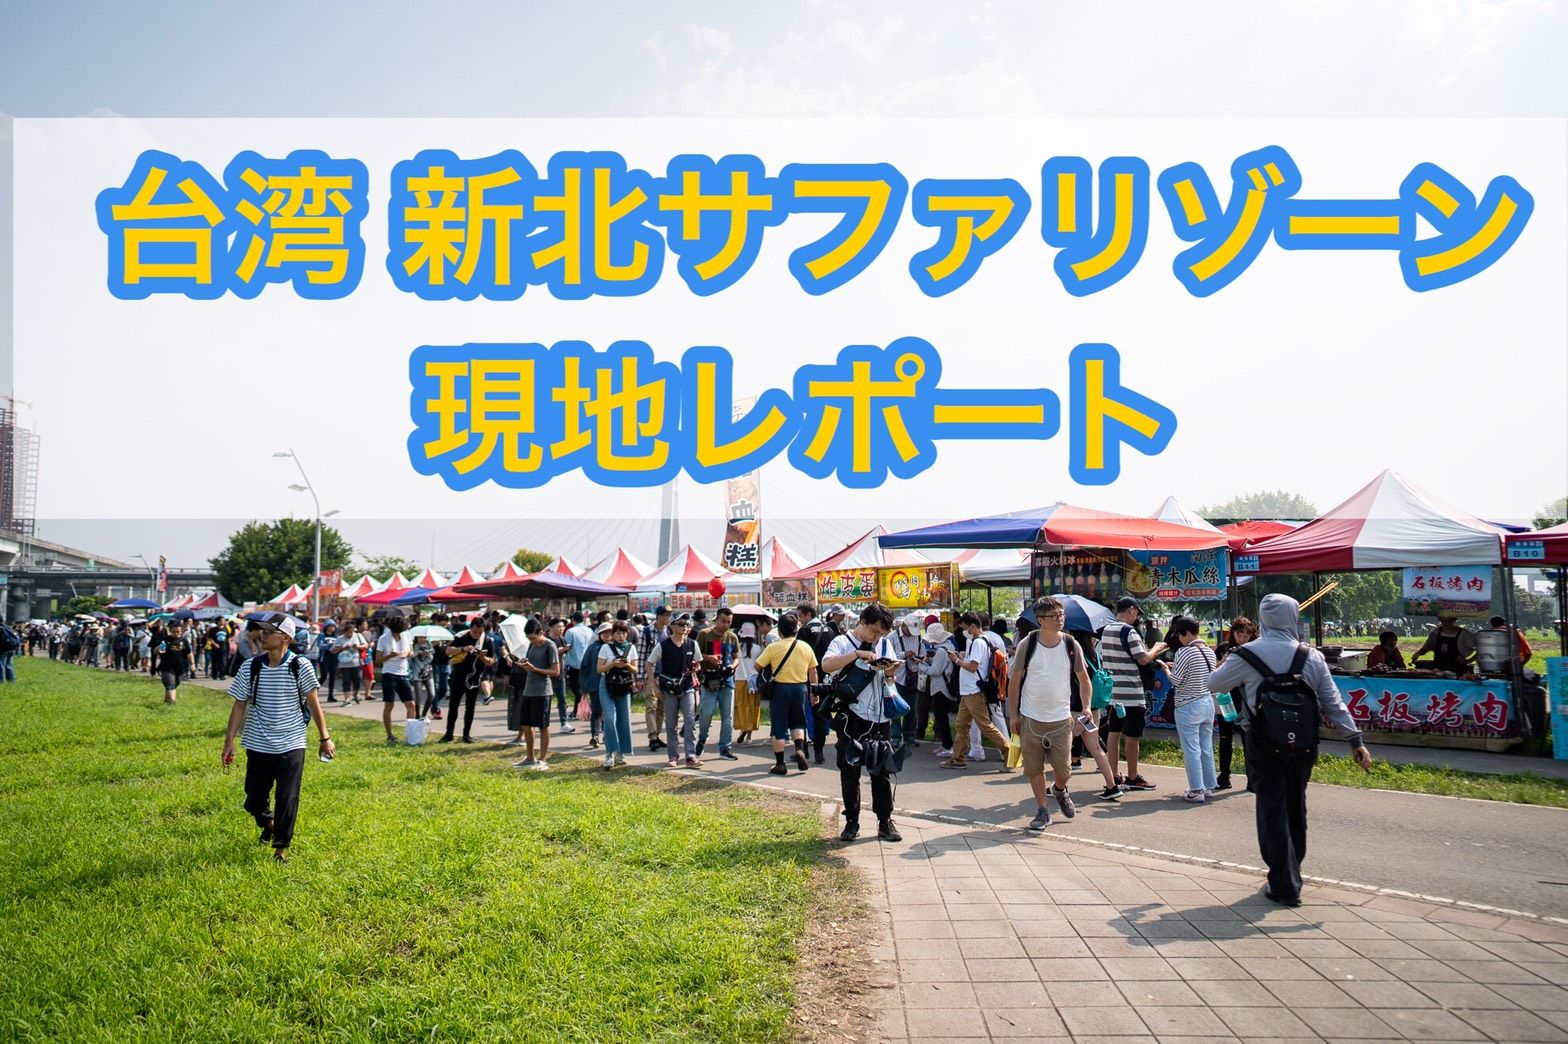 ポケモンgo台湾イベント Safari Zone In New Taipei City はお祭り状態 現地リポートと注意点まとめ